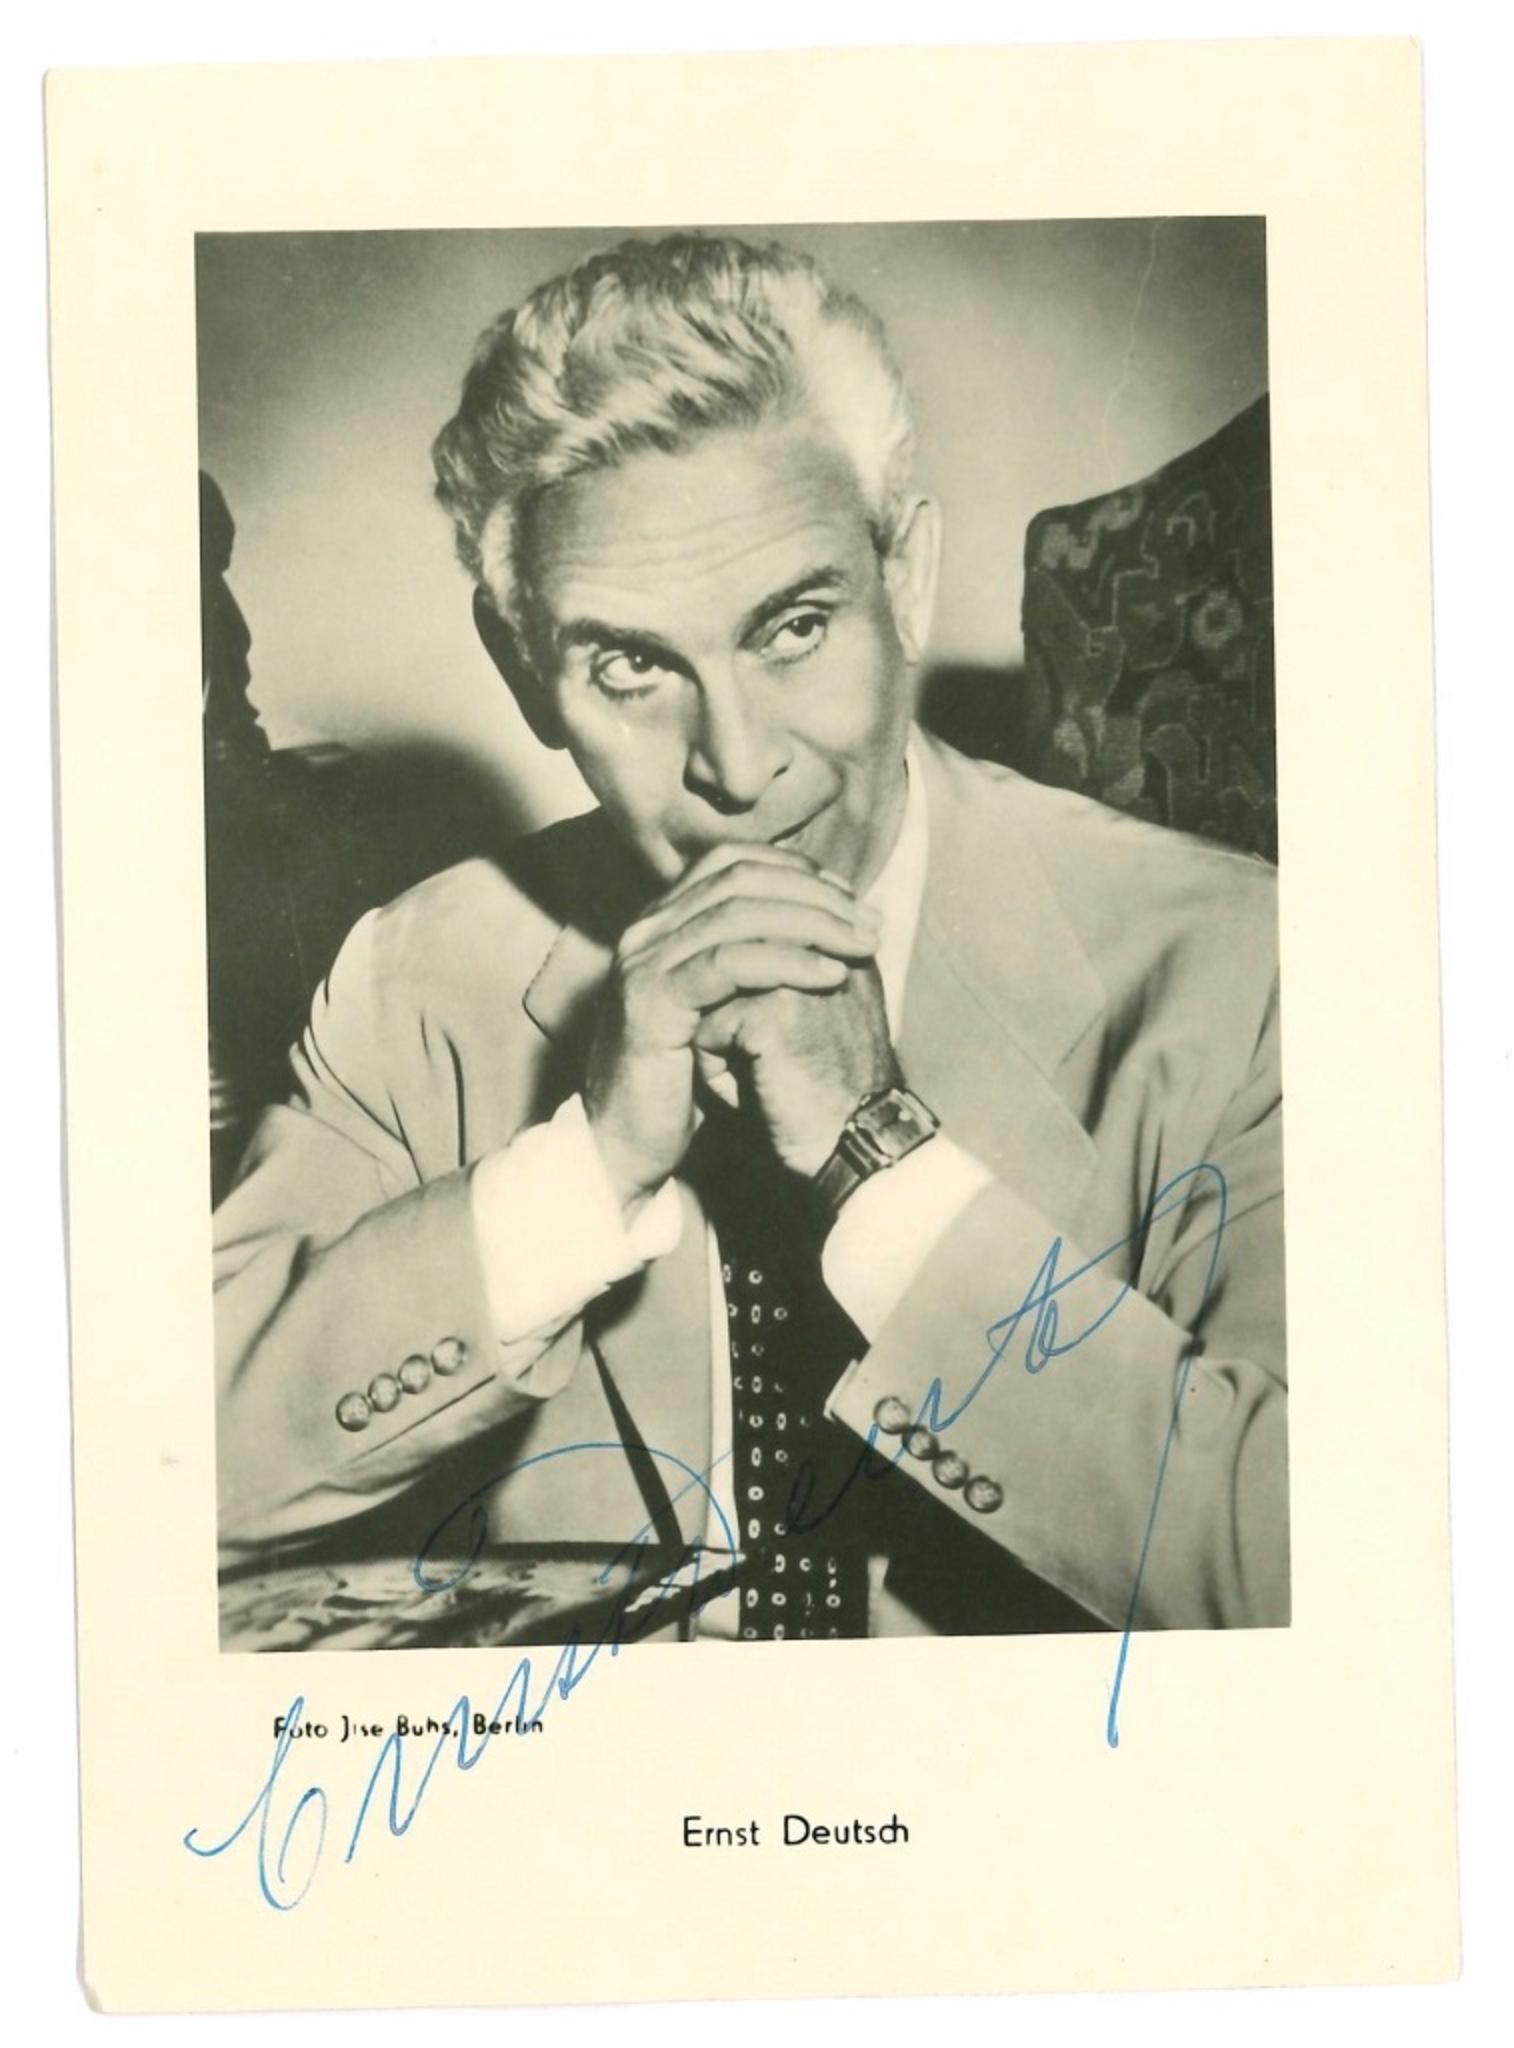 Unknown Portrait Photograph - Autographed Portrait of Ernst Deutsch - Vintage b/w Postcard - 1950s